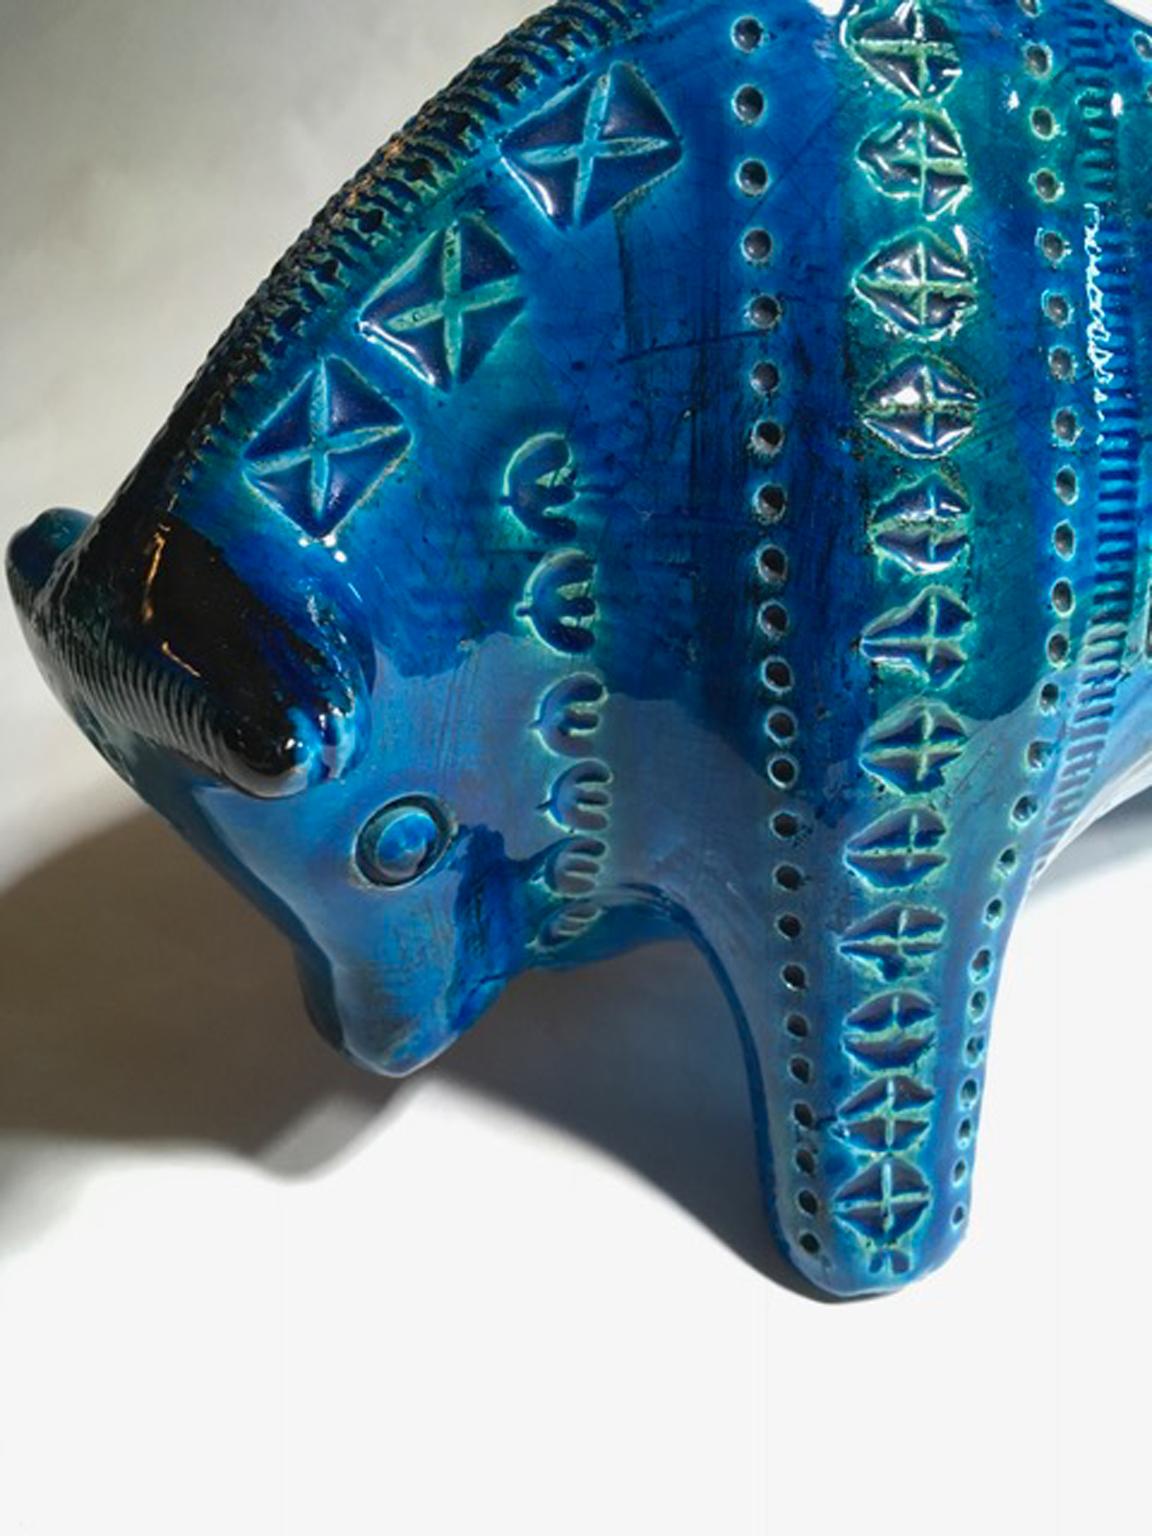 1980 Post-Modern Italian Design Bull in Turquoise Enameled Ceramic For Sale 12